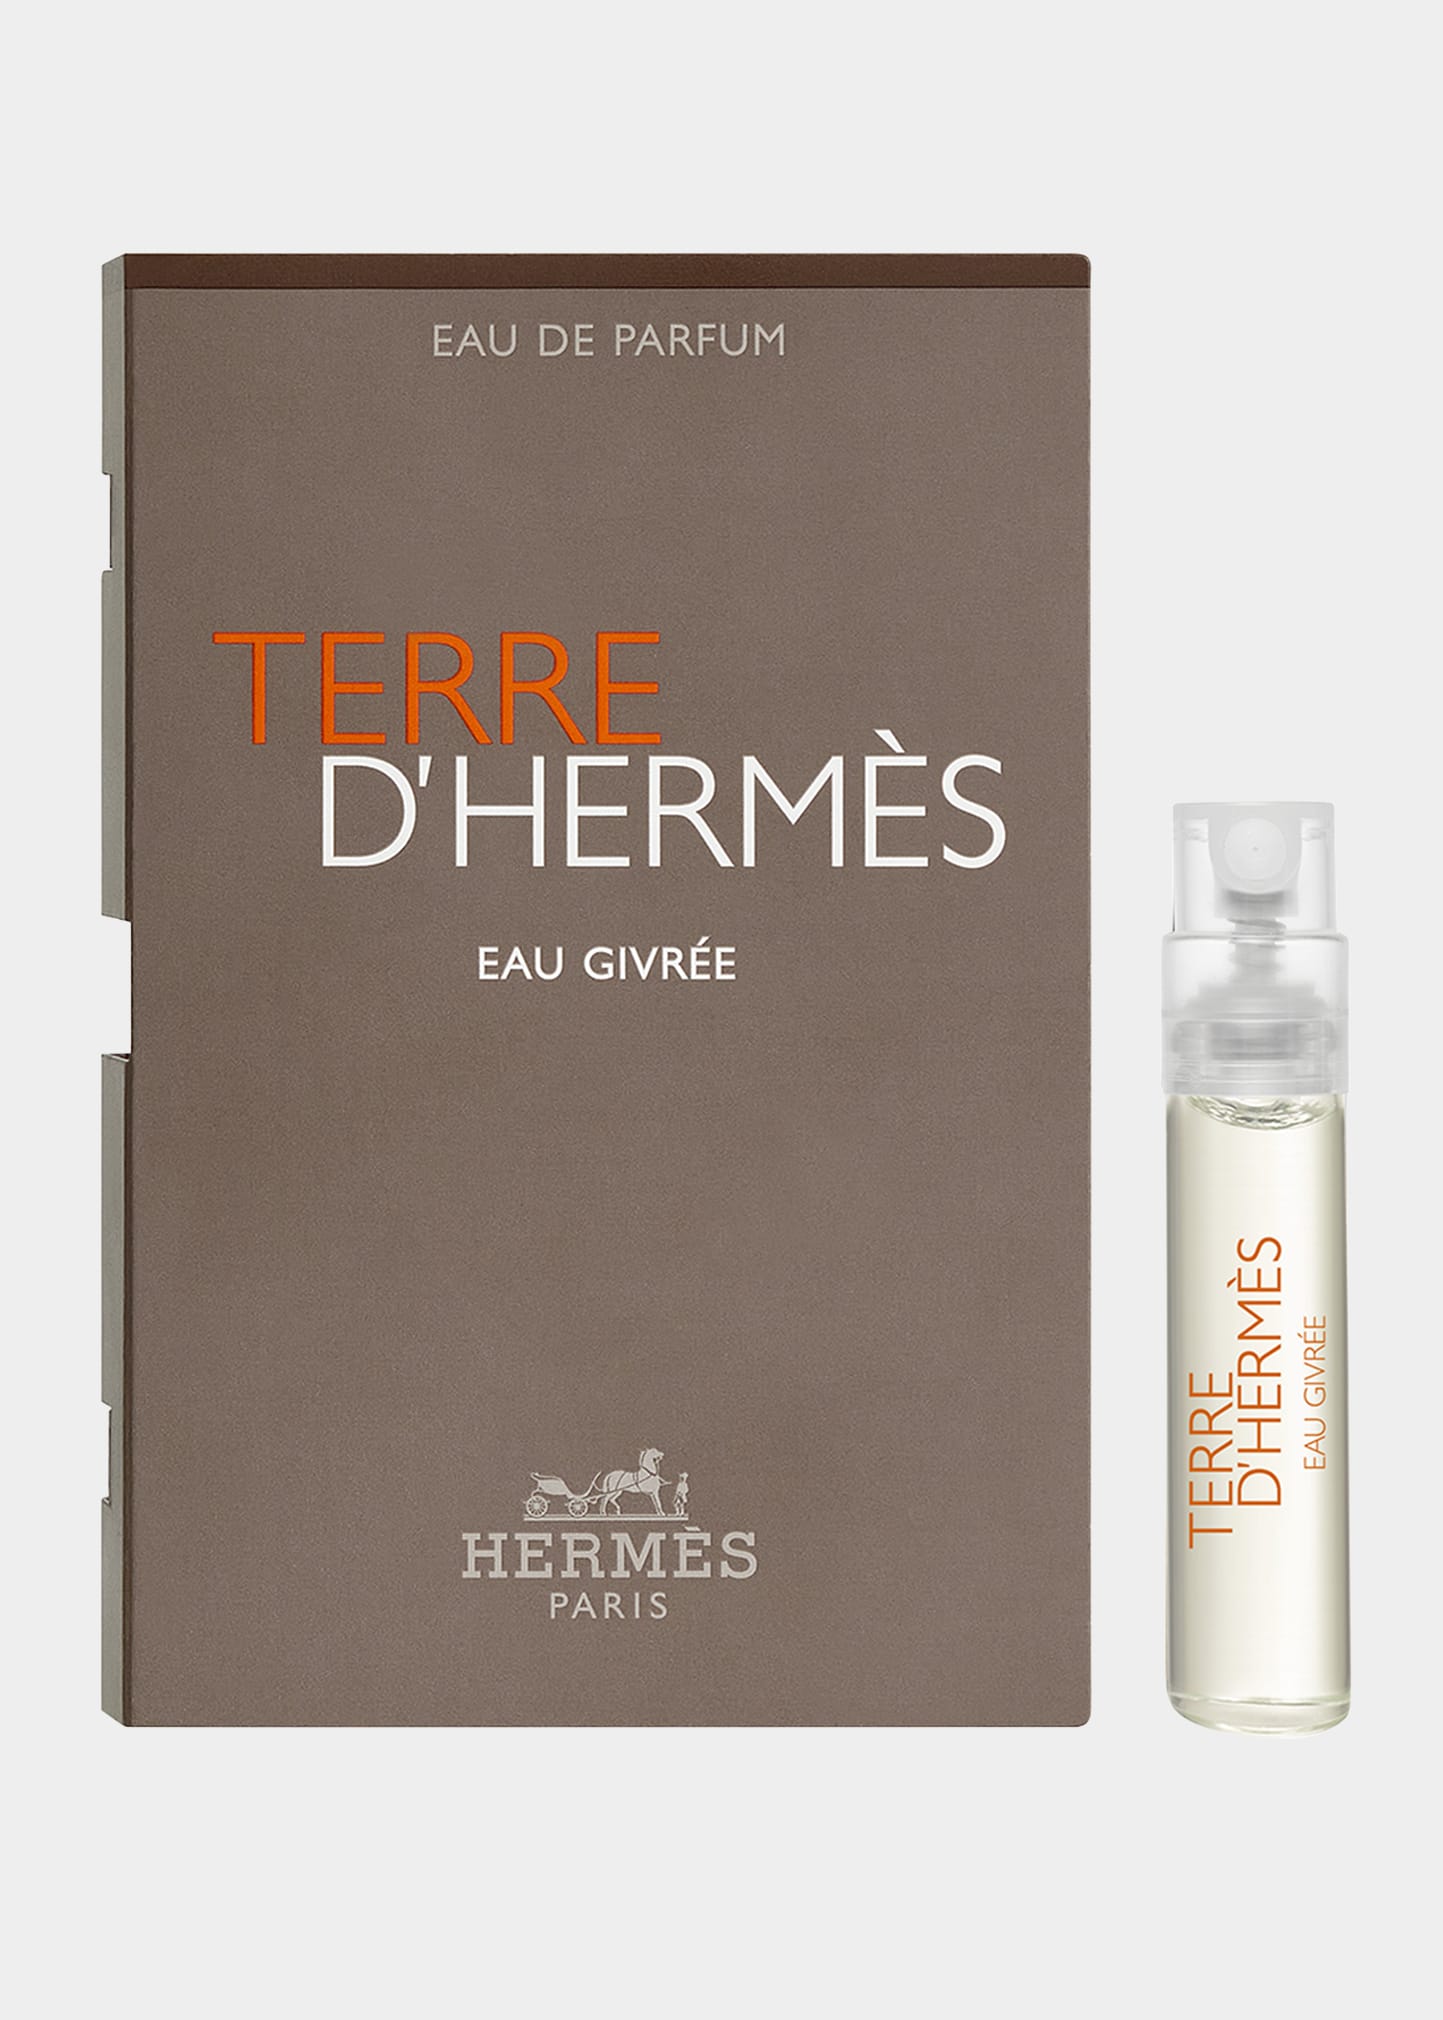 Herm&egrave;s Terre d'Hermes Eau Givree Eau de Parfum Sample at Checkout